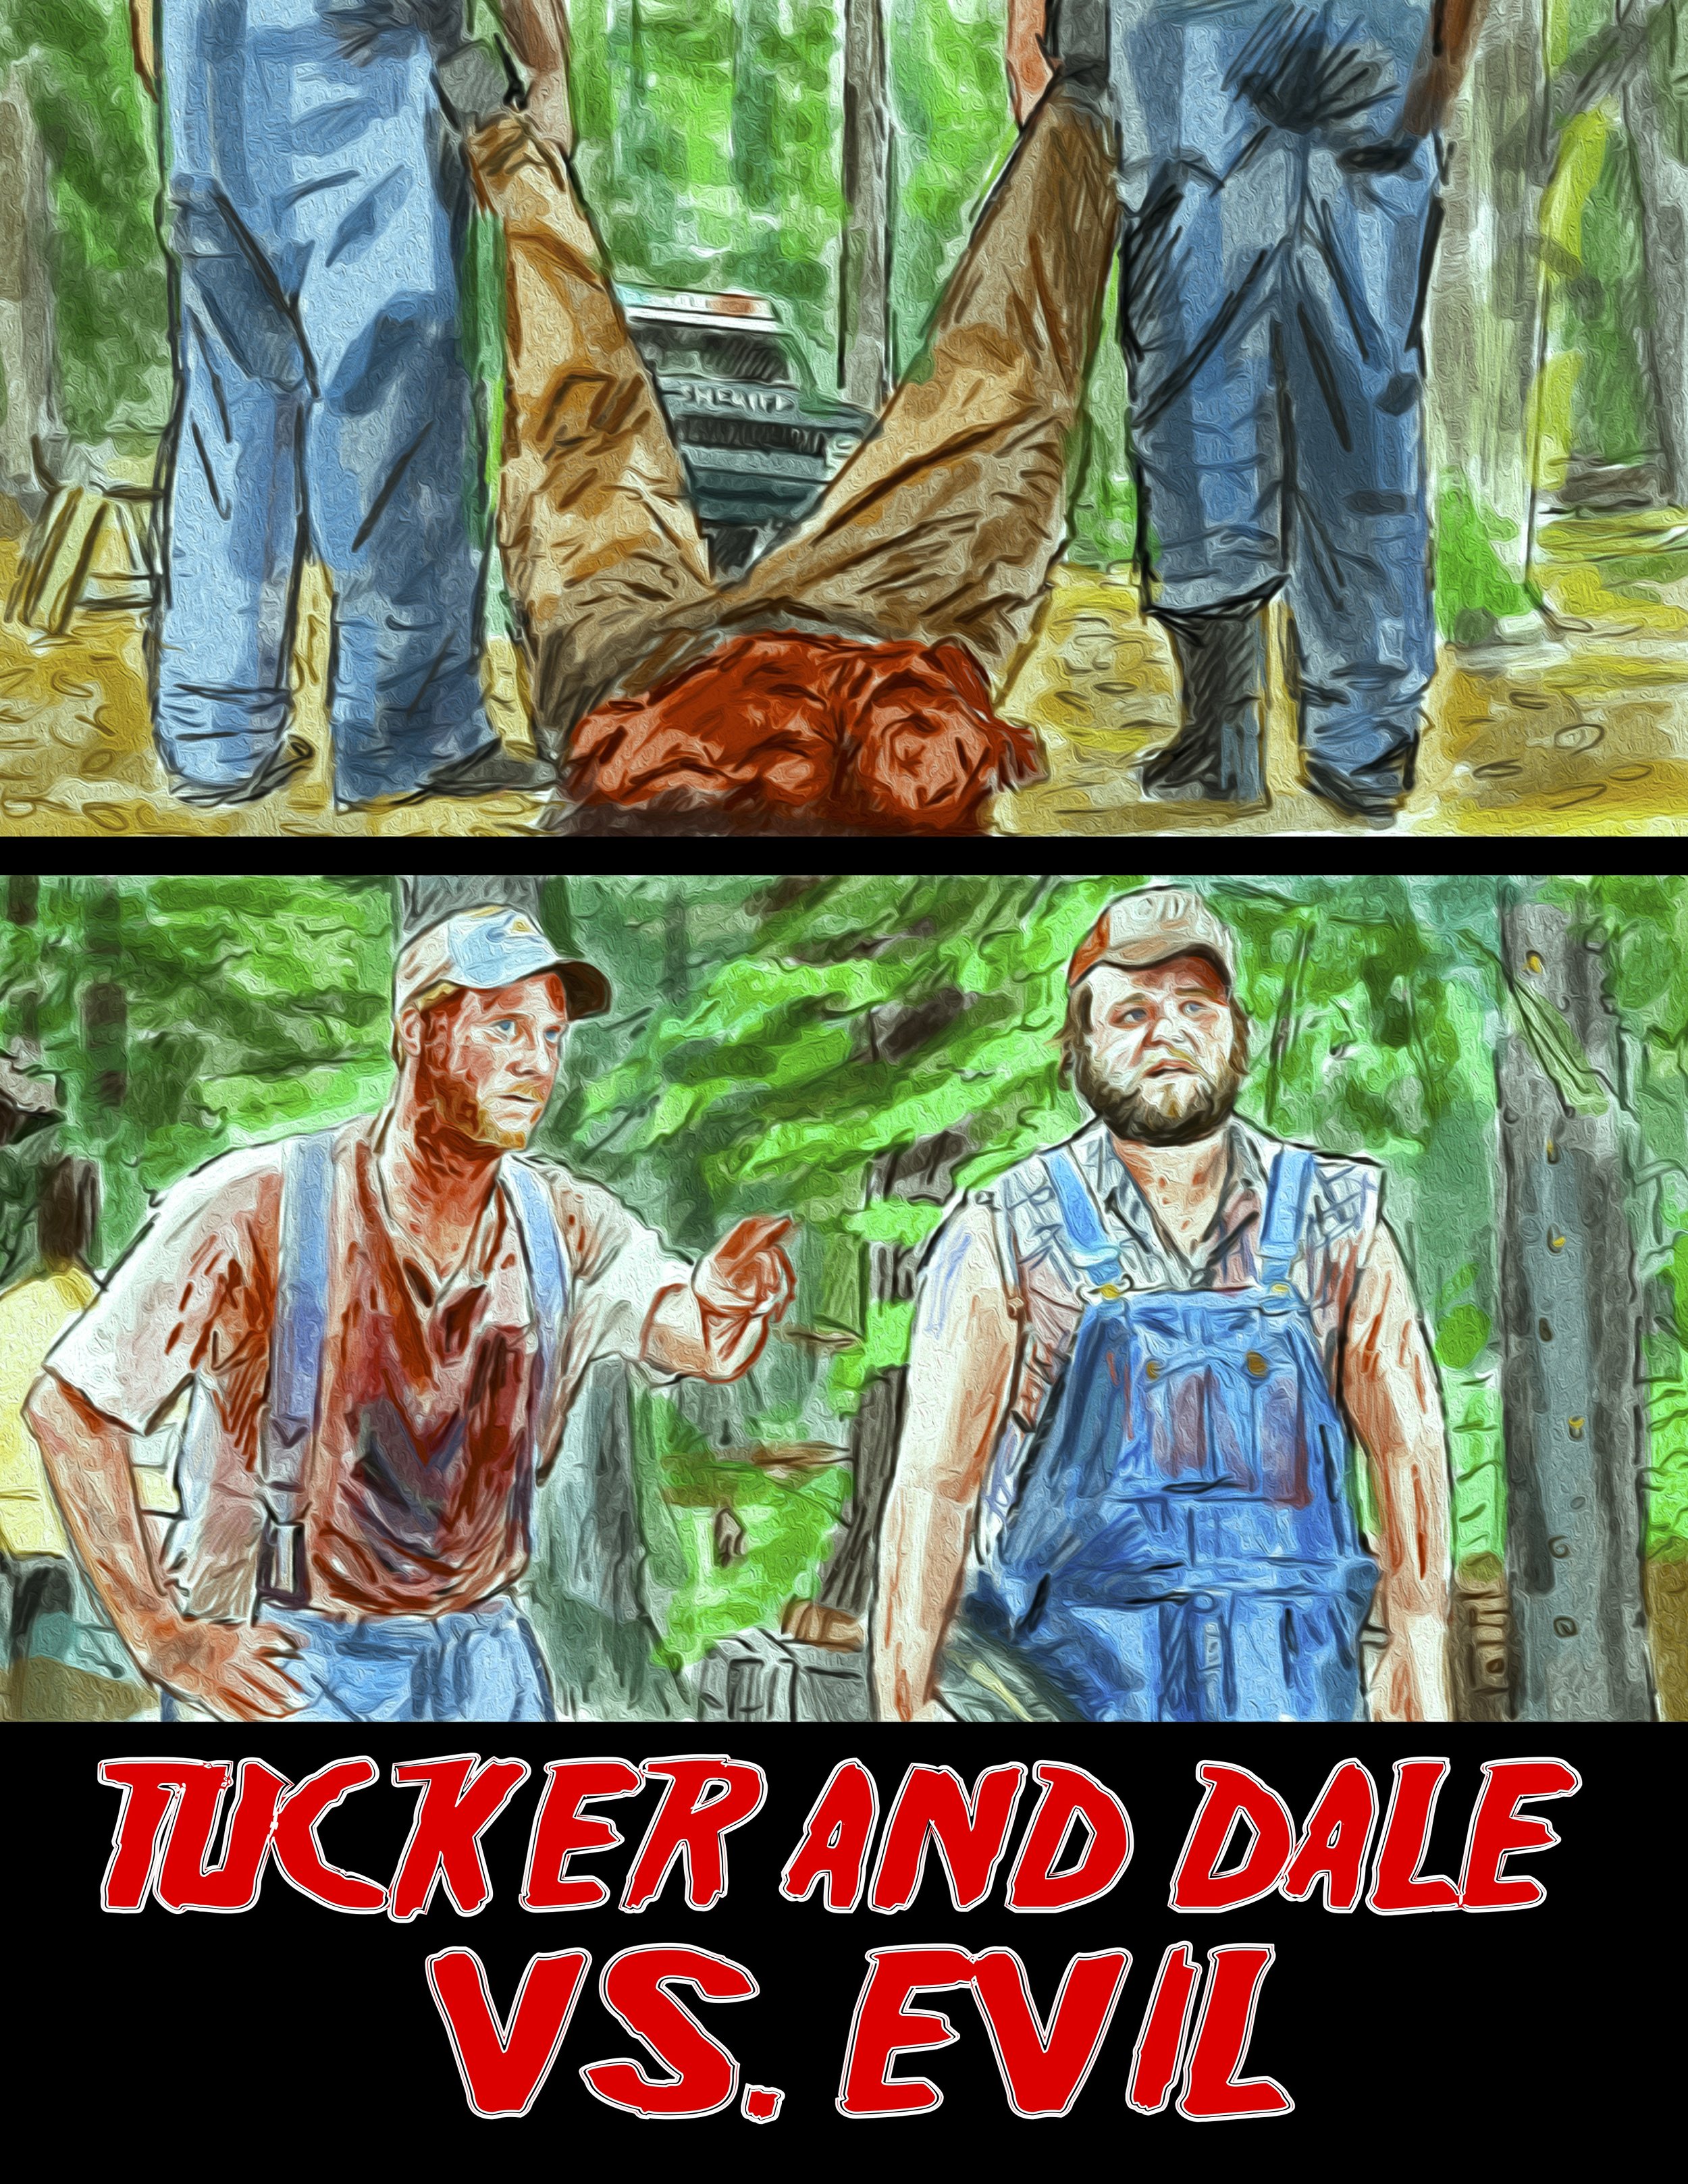 Tucker &amp; Dale vs. Evil (2010)